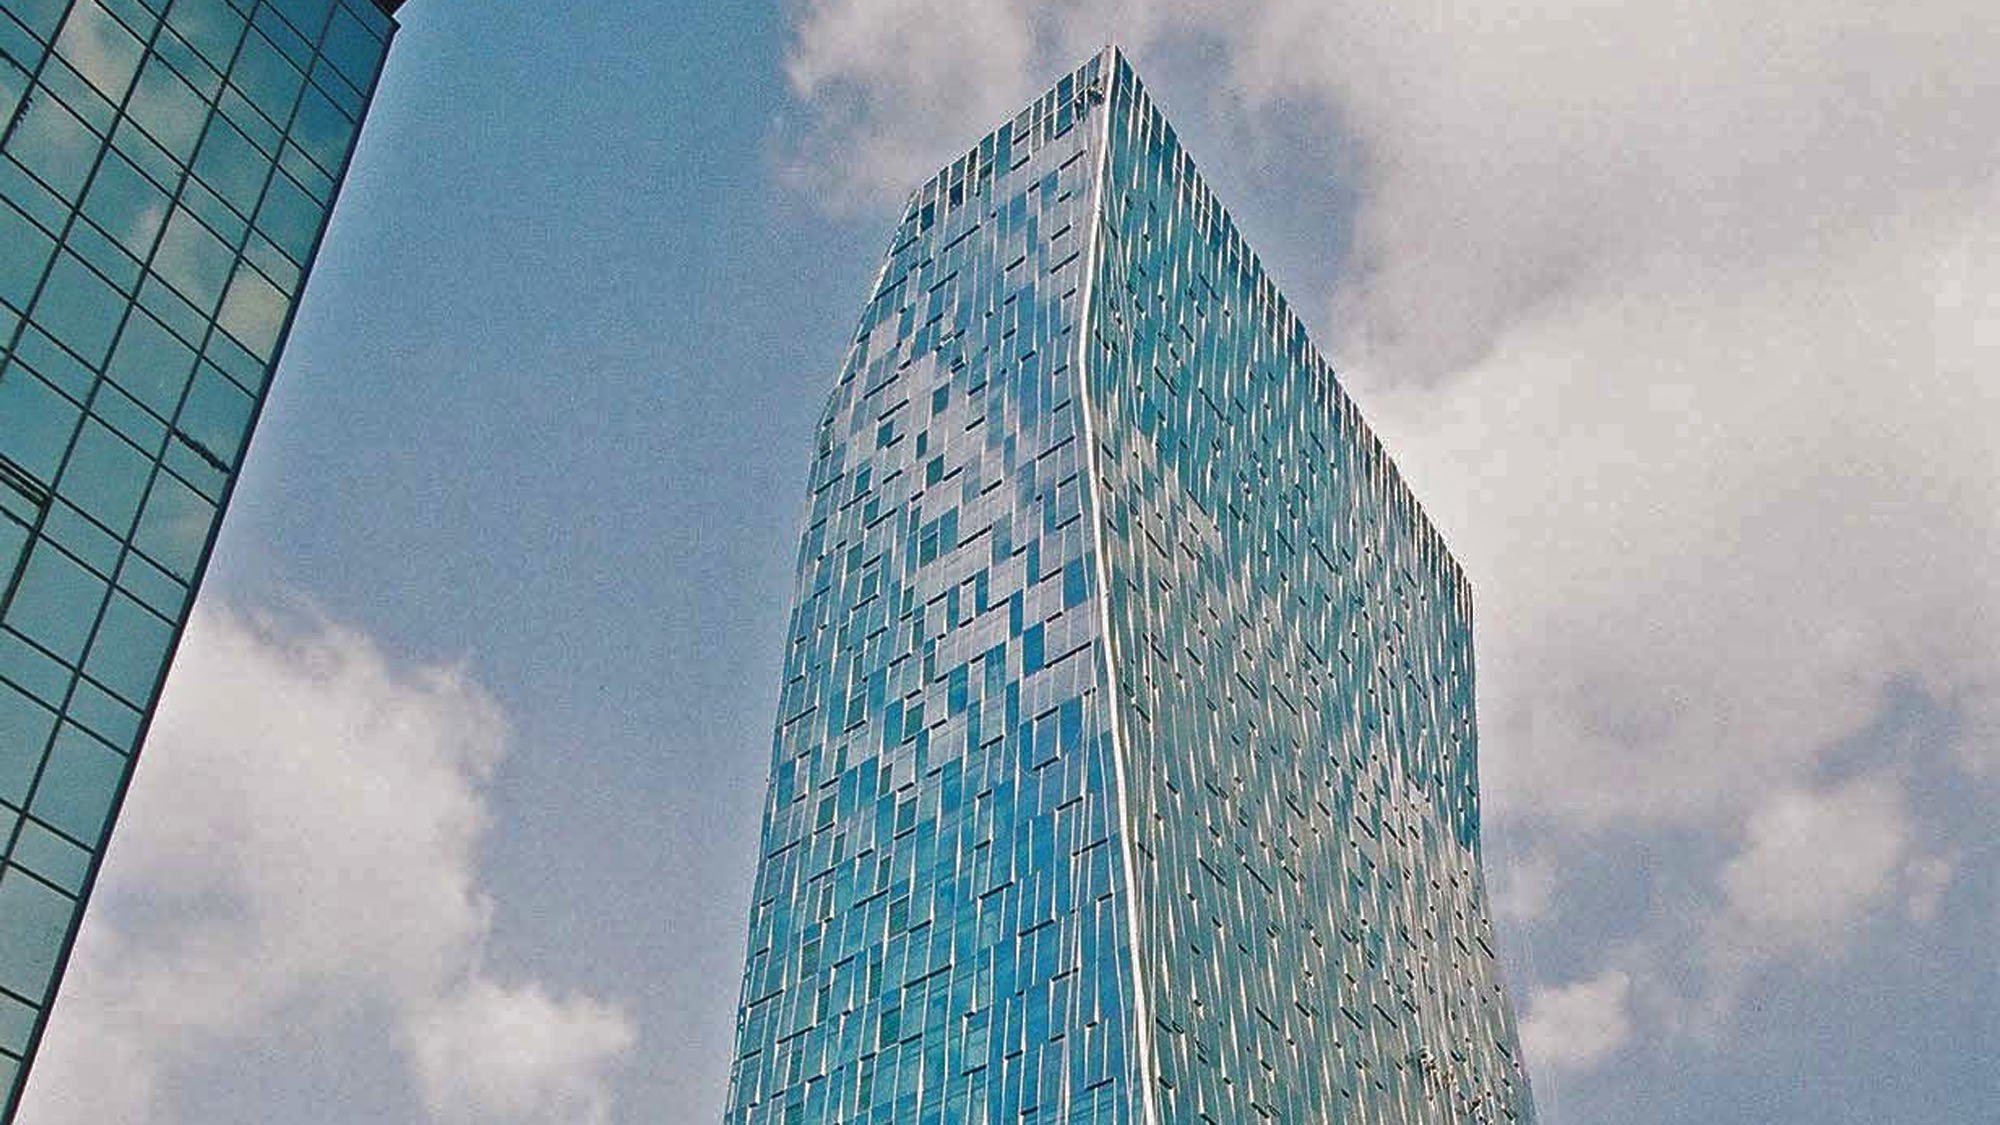 SK Telecom Tower